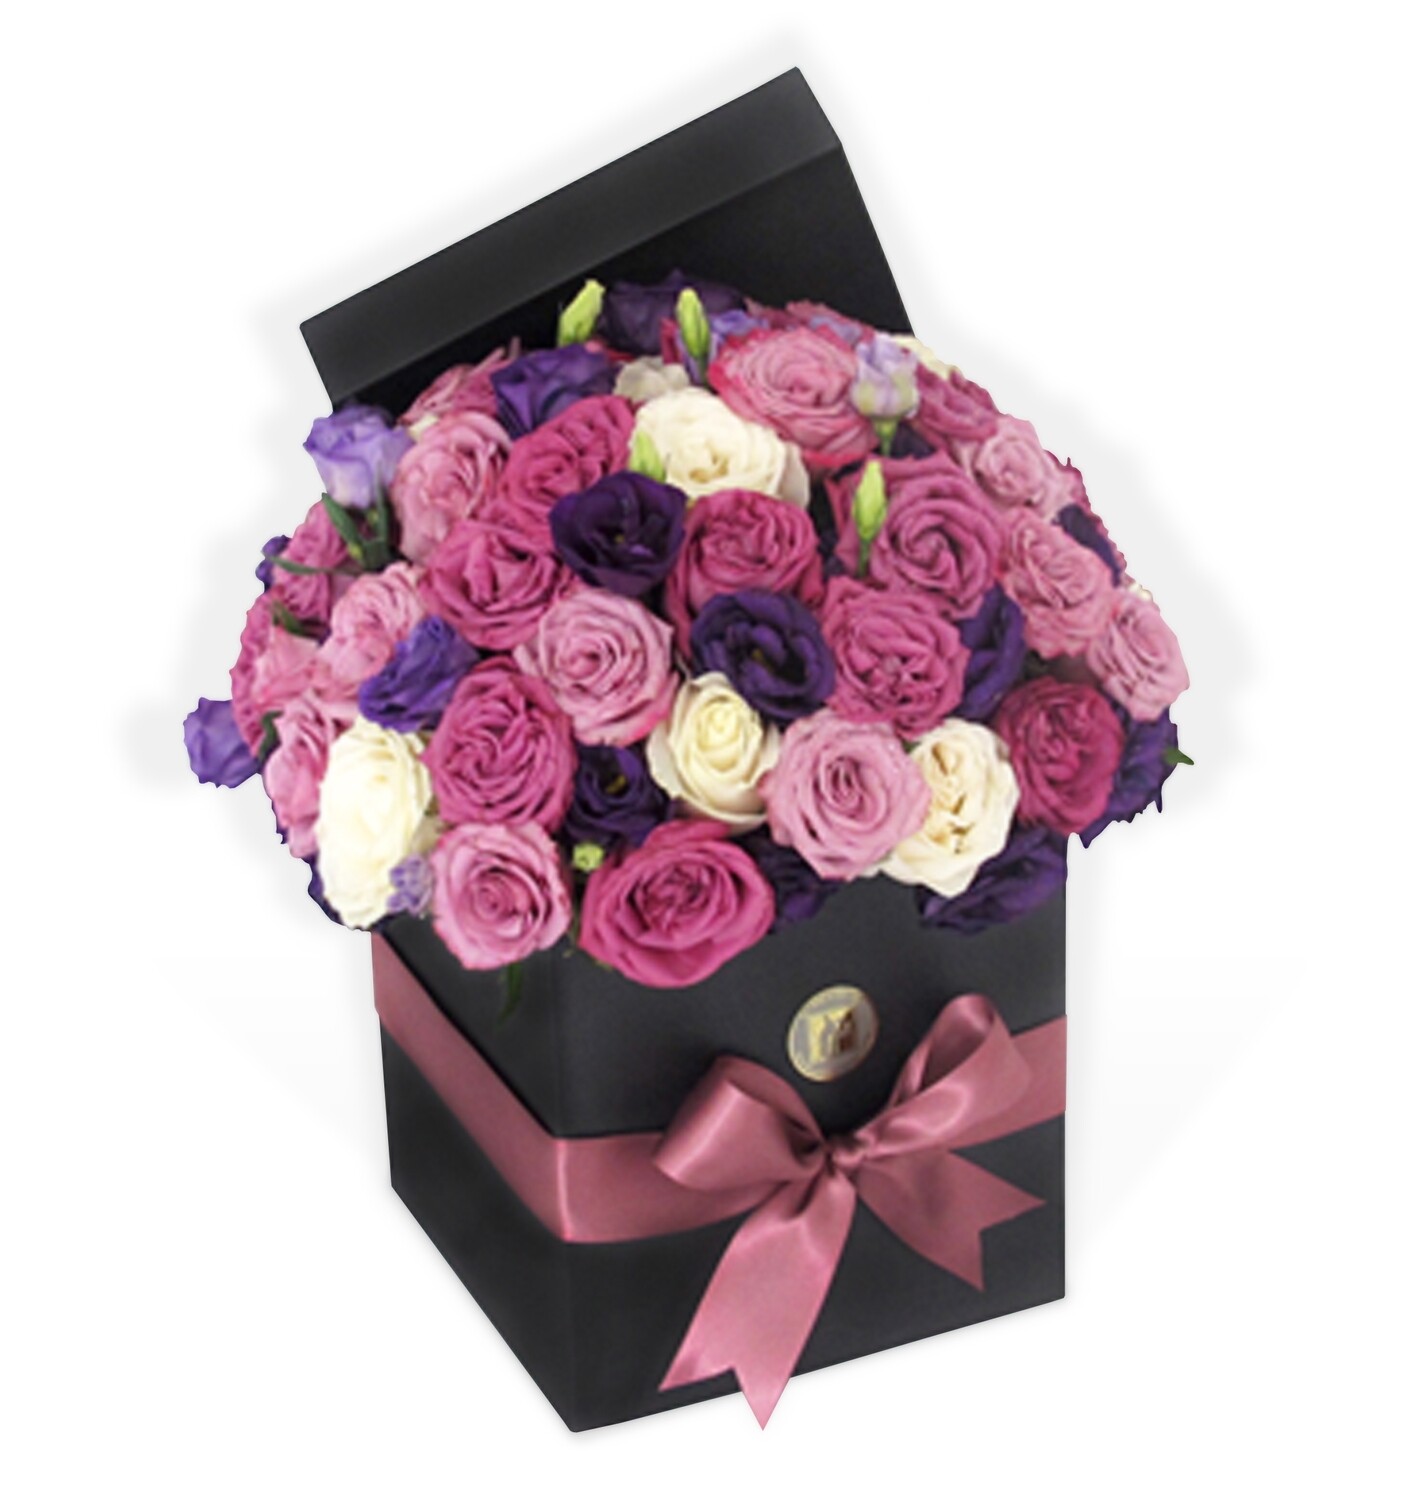 Bouquet Rosas Multicolor | NOCHE DE ROSAS